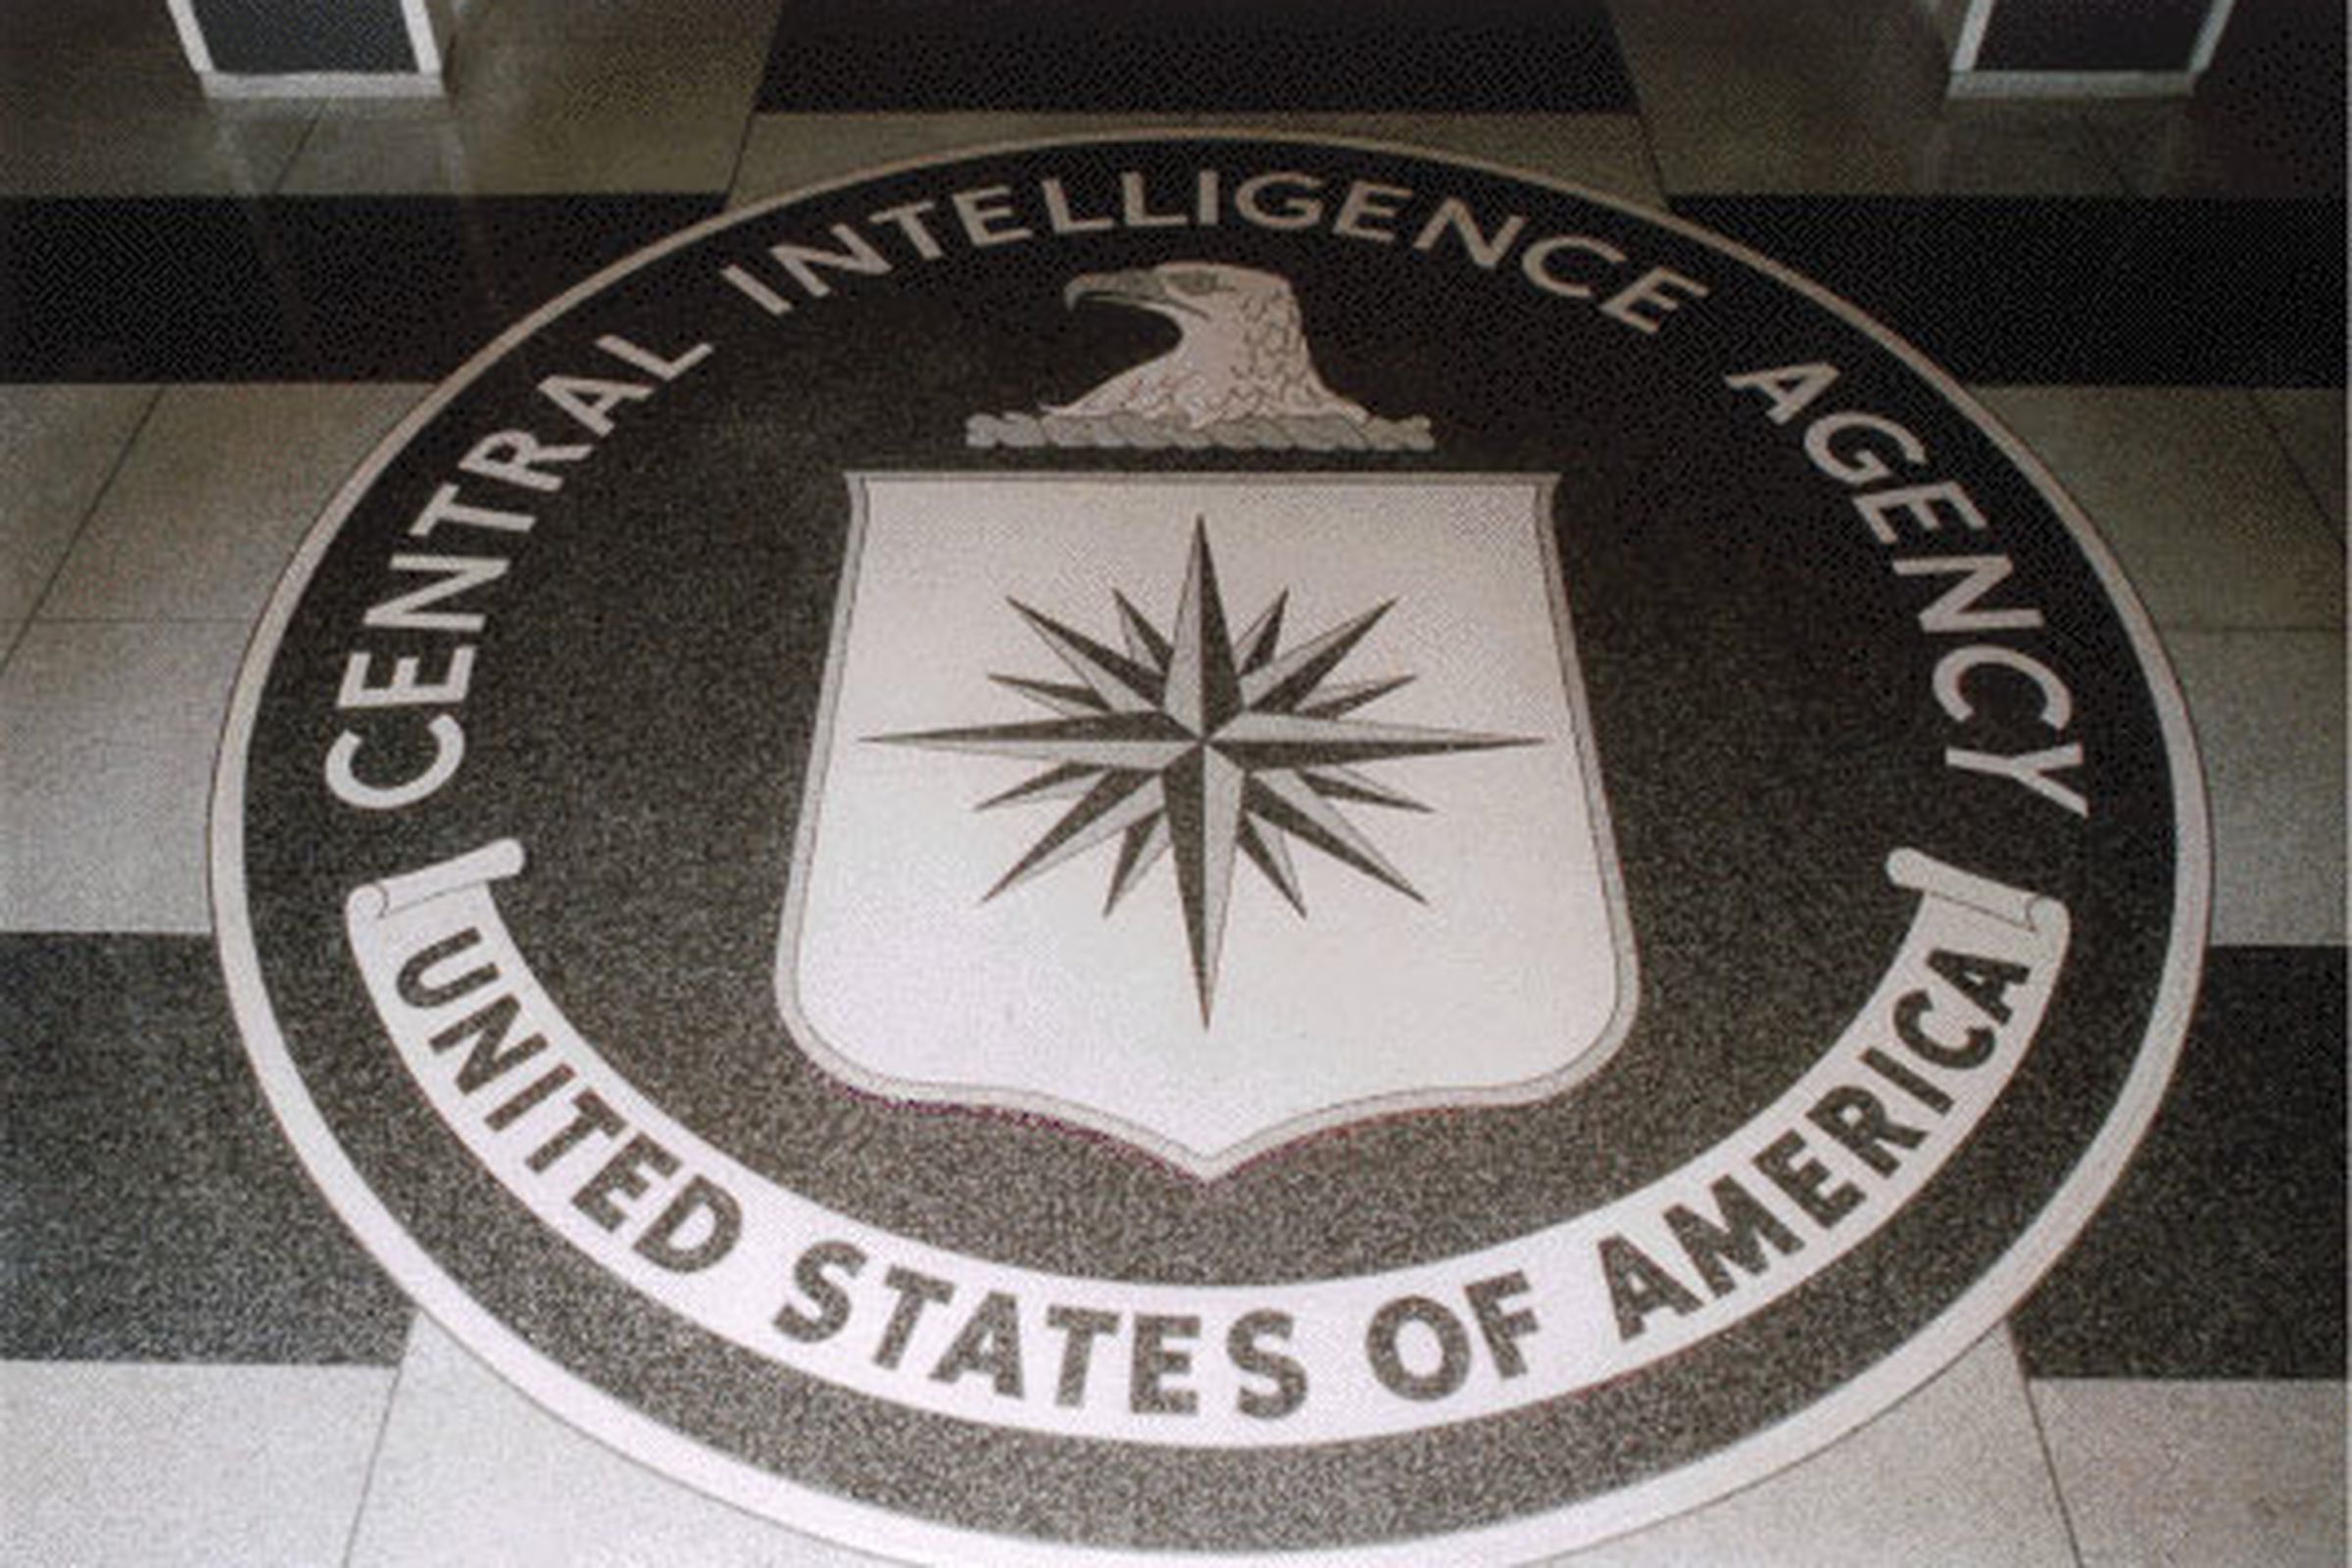 CIA lobby (wikimedia commons)